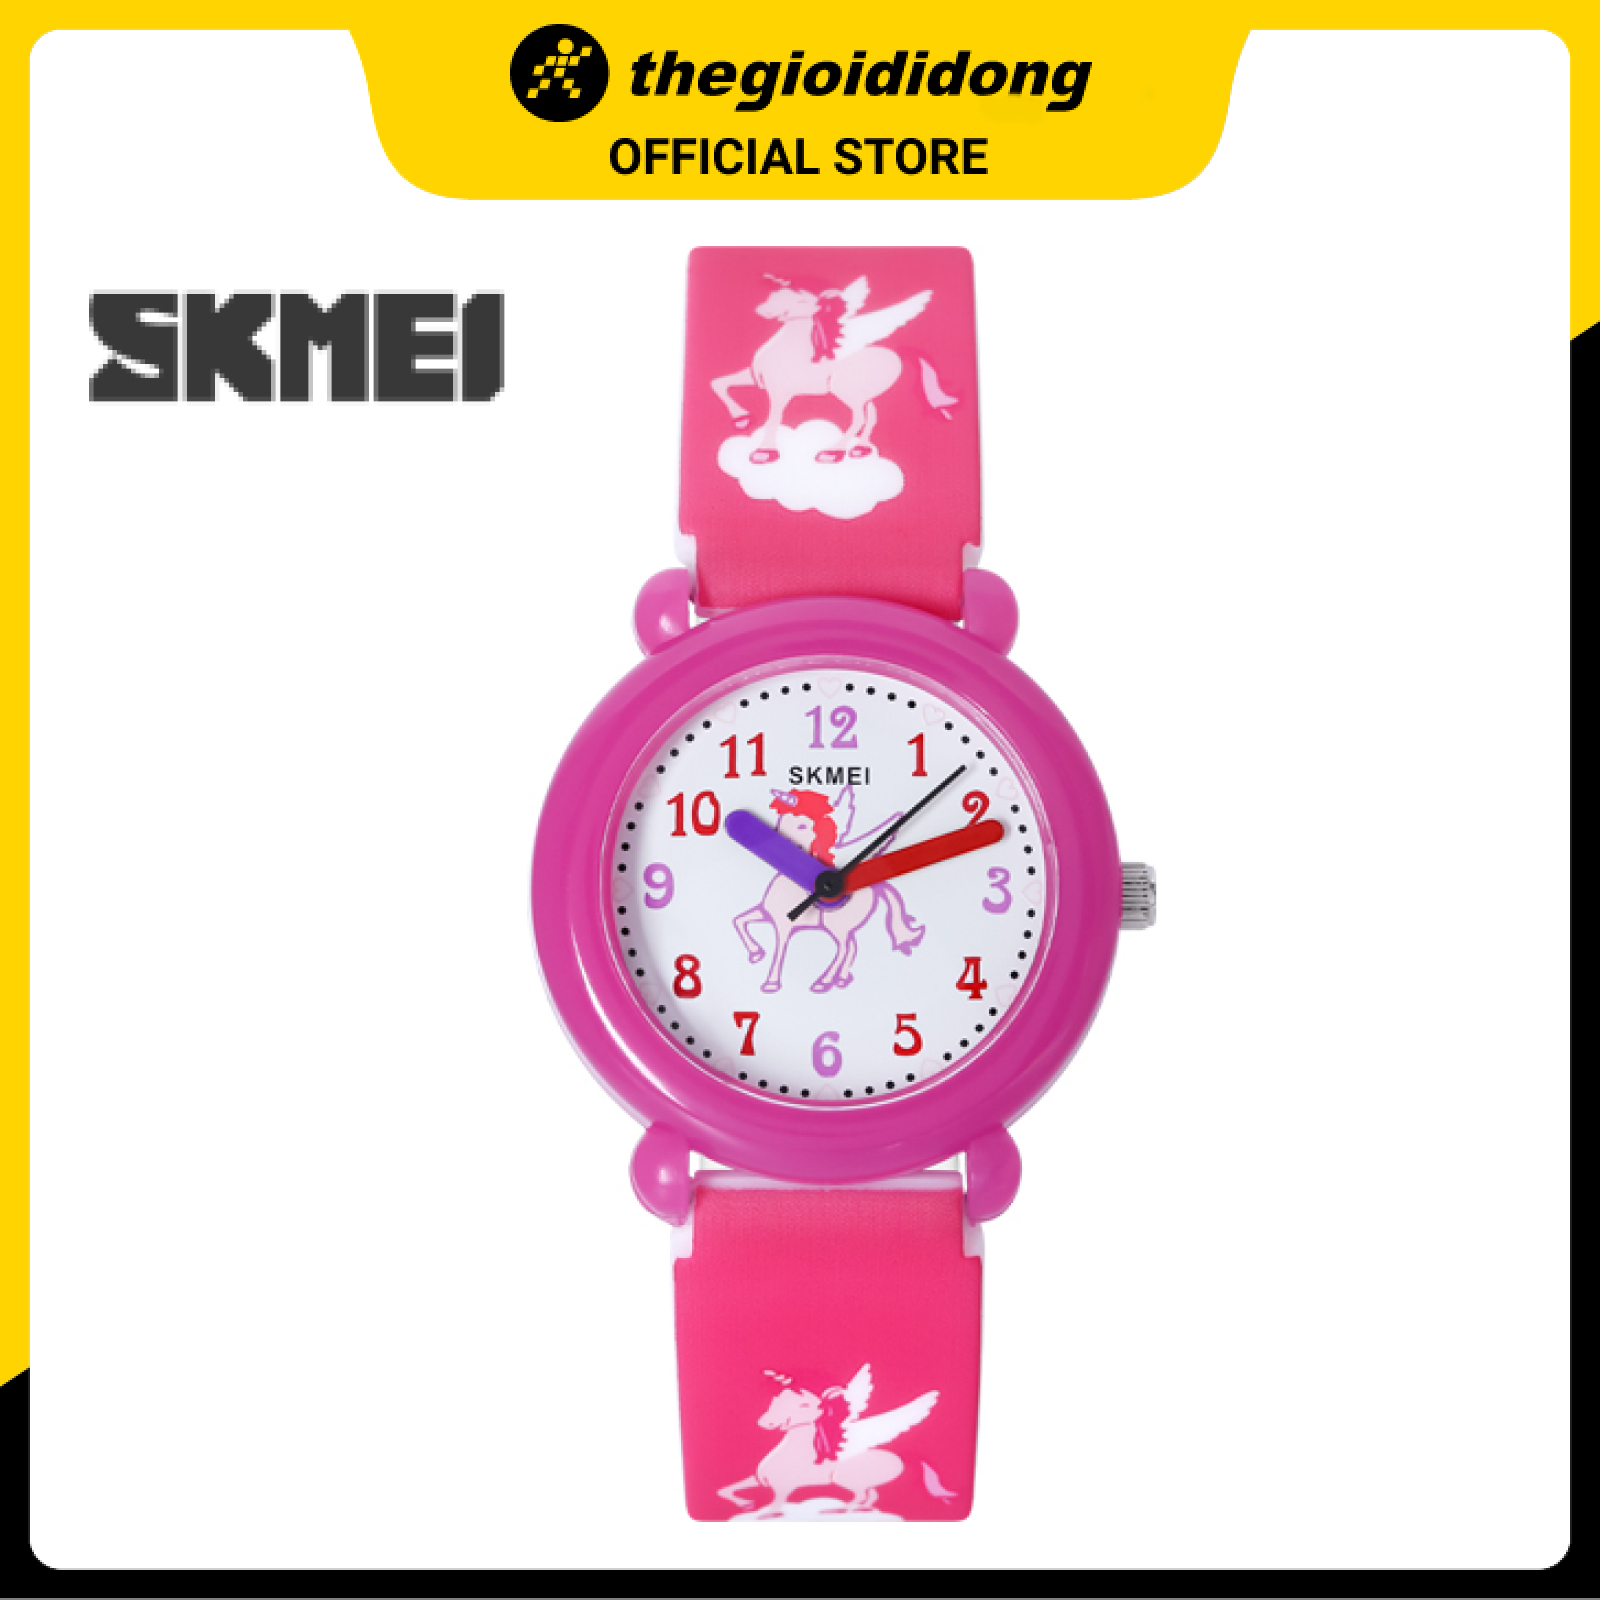 Đồng hồ Trẻ em Skmei SK-1621 Hồng Đỏ - Hàng chính hãng